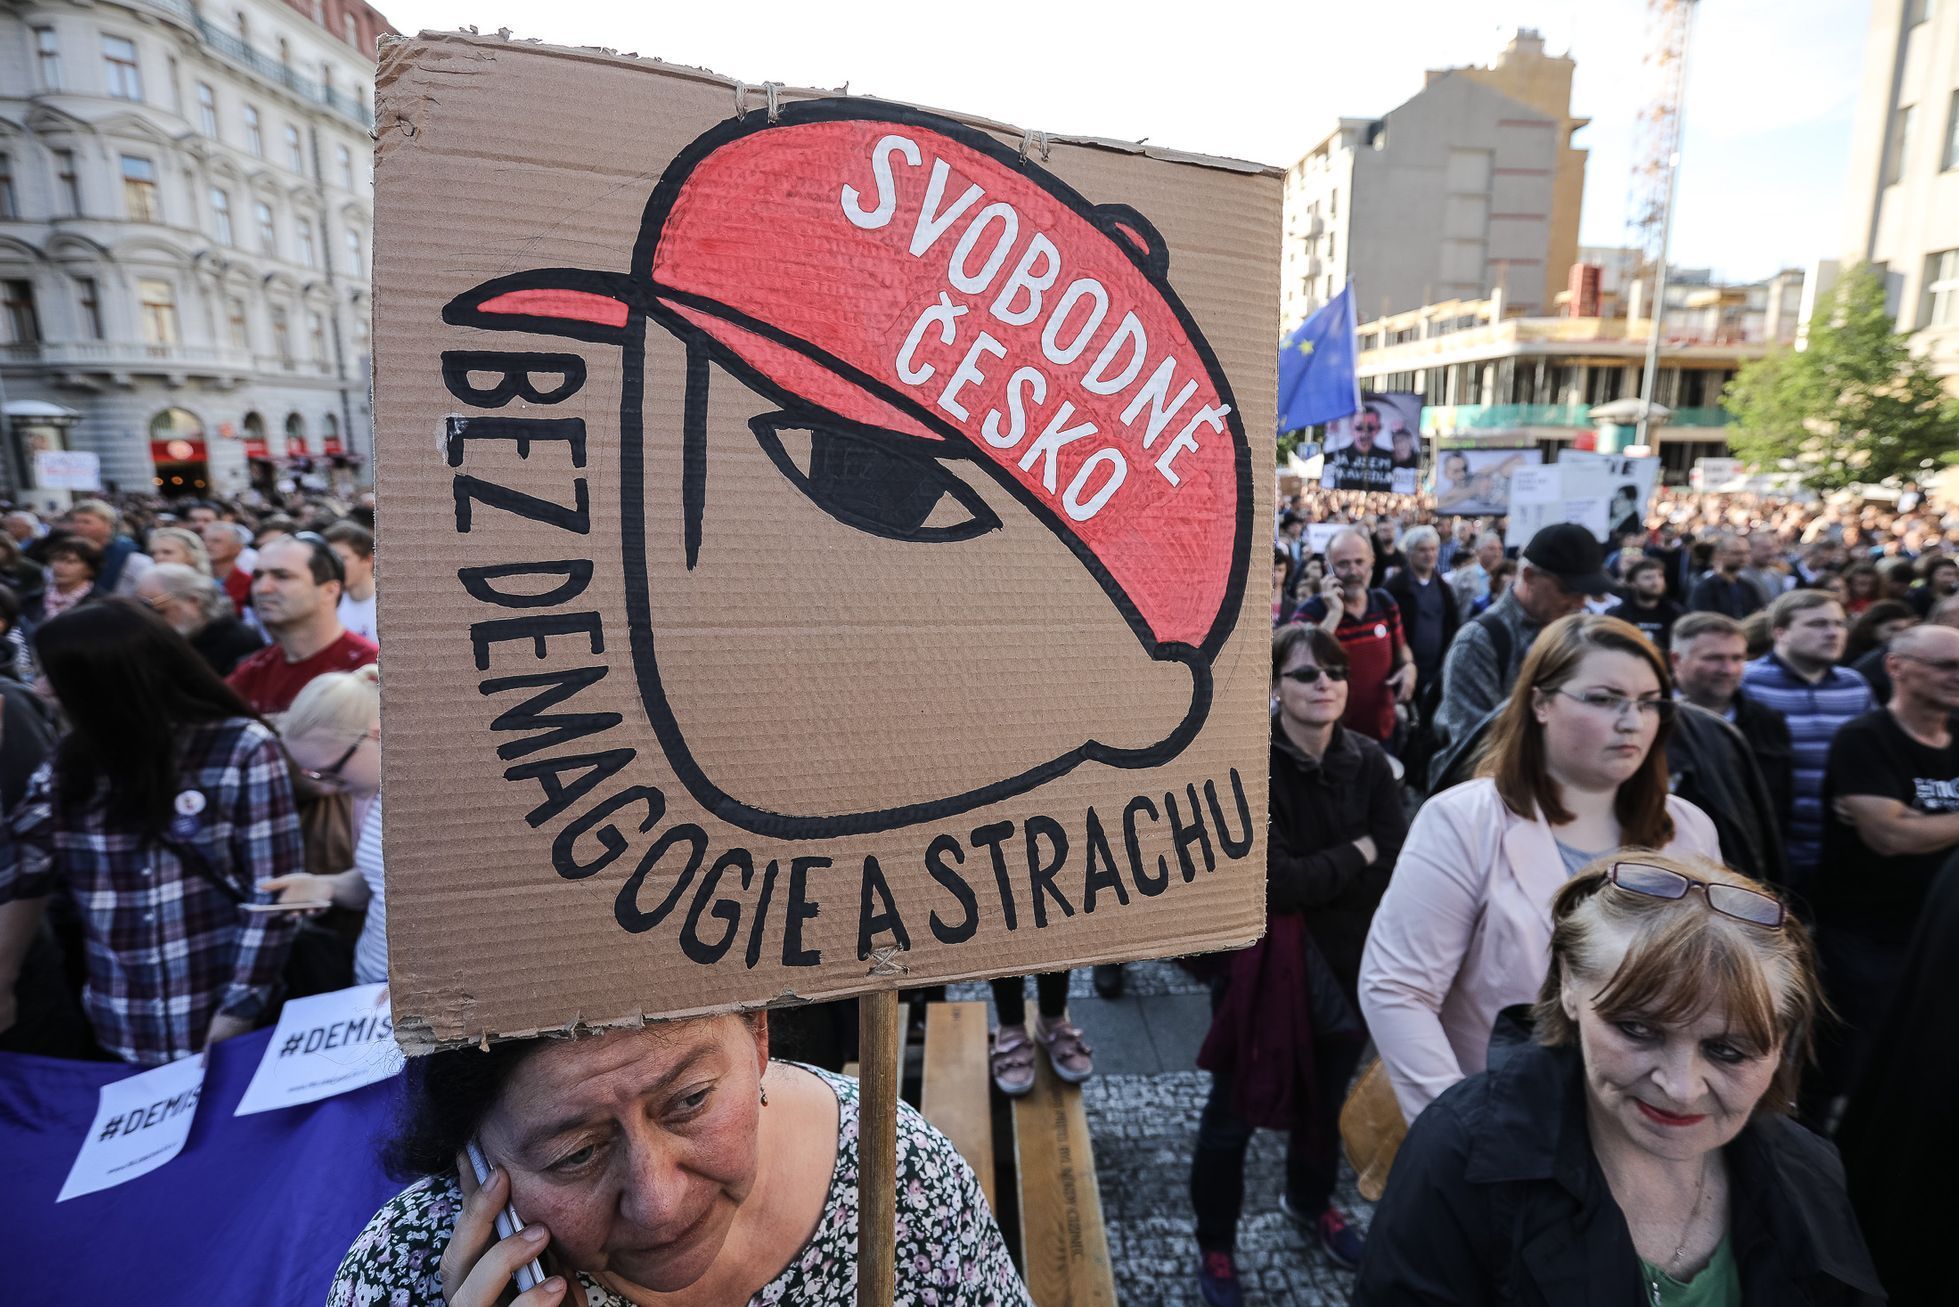 Demonstrace proti Benešové a Babišovi na Václavském náměstí, Milion chvilek pro demokracii